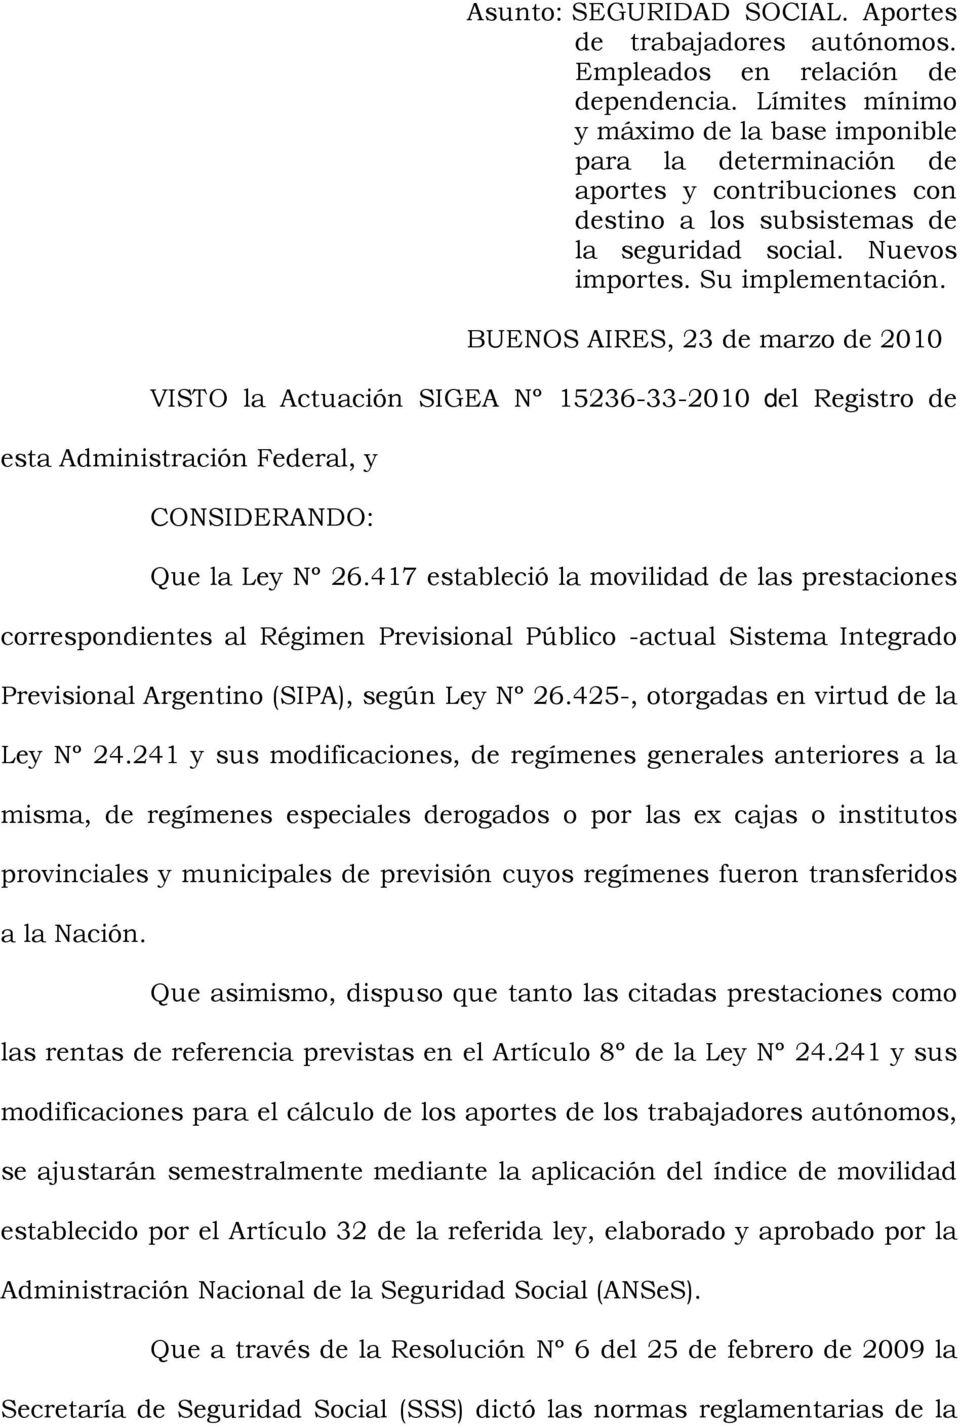 BUENOS AIRES, 23 de marzo de 2010 VISTO la Actuación SIGEA Nº 15236-33-2010 del Registro de esta Administración Federal, y CONSIDERANDO: Que la Ley Nº 26.